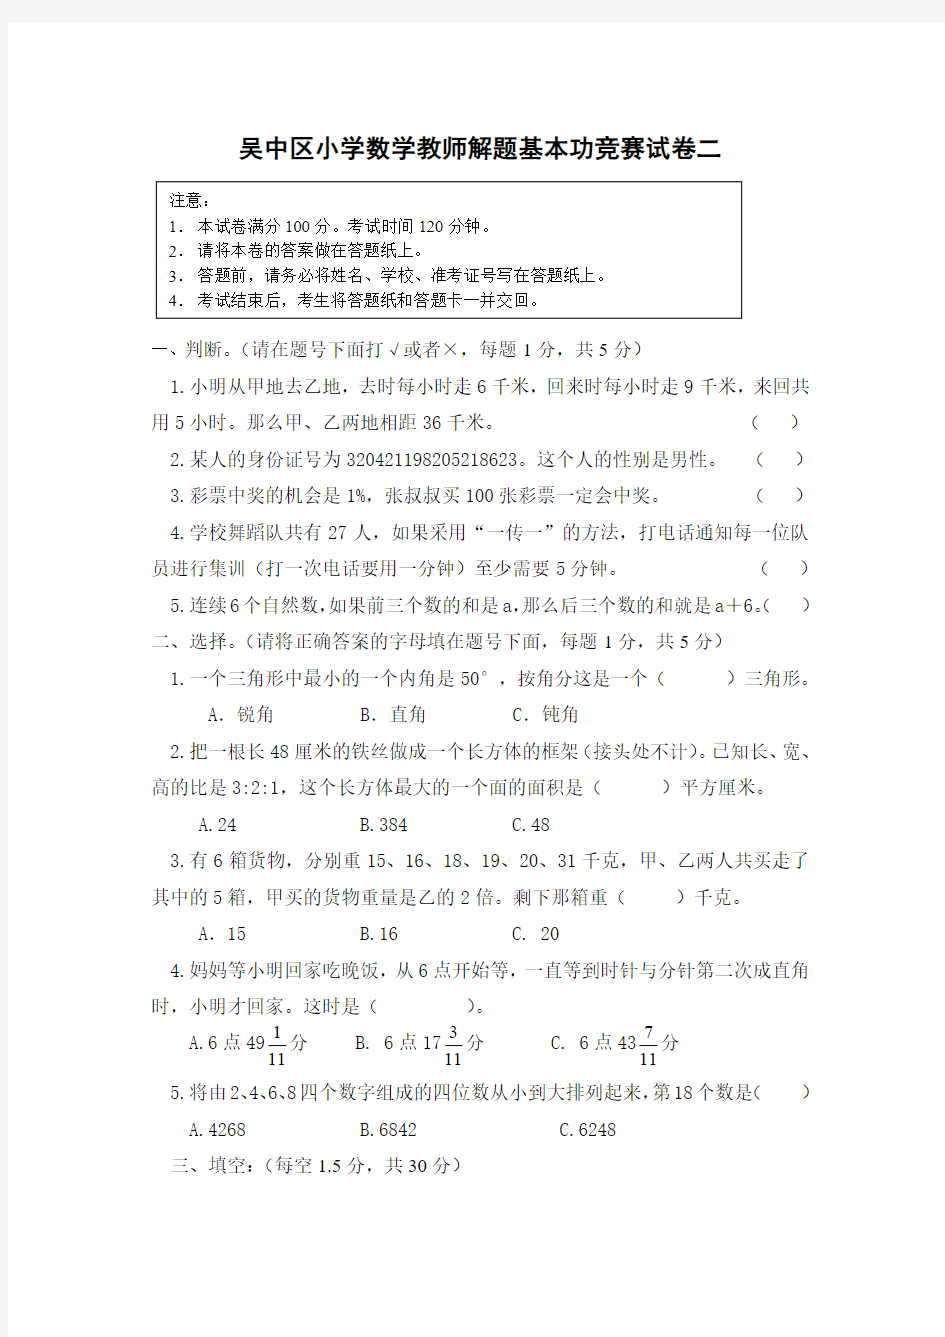 9吴中区小学数学教师解题基本功竞赛试卷二及答案